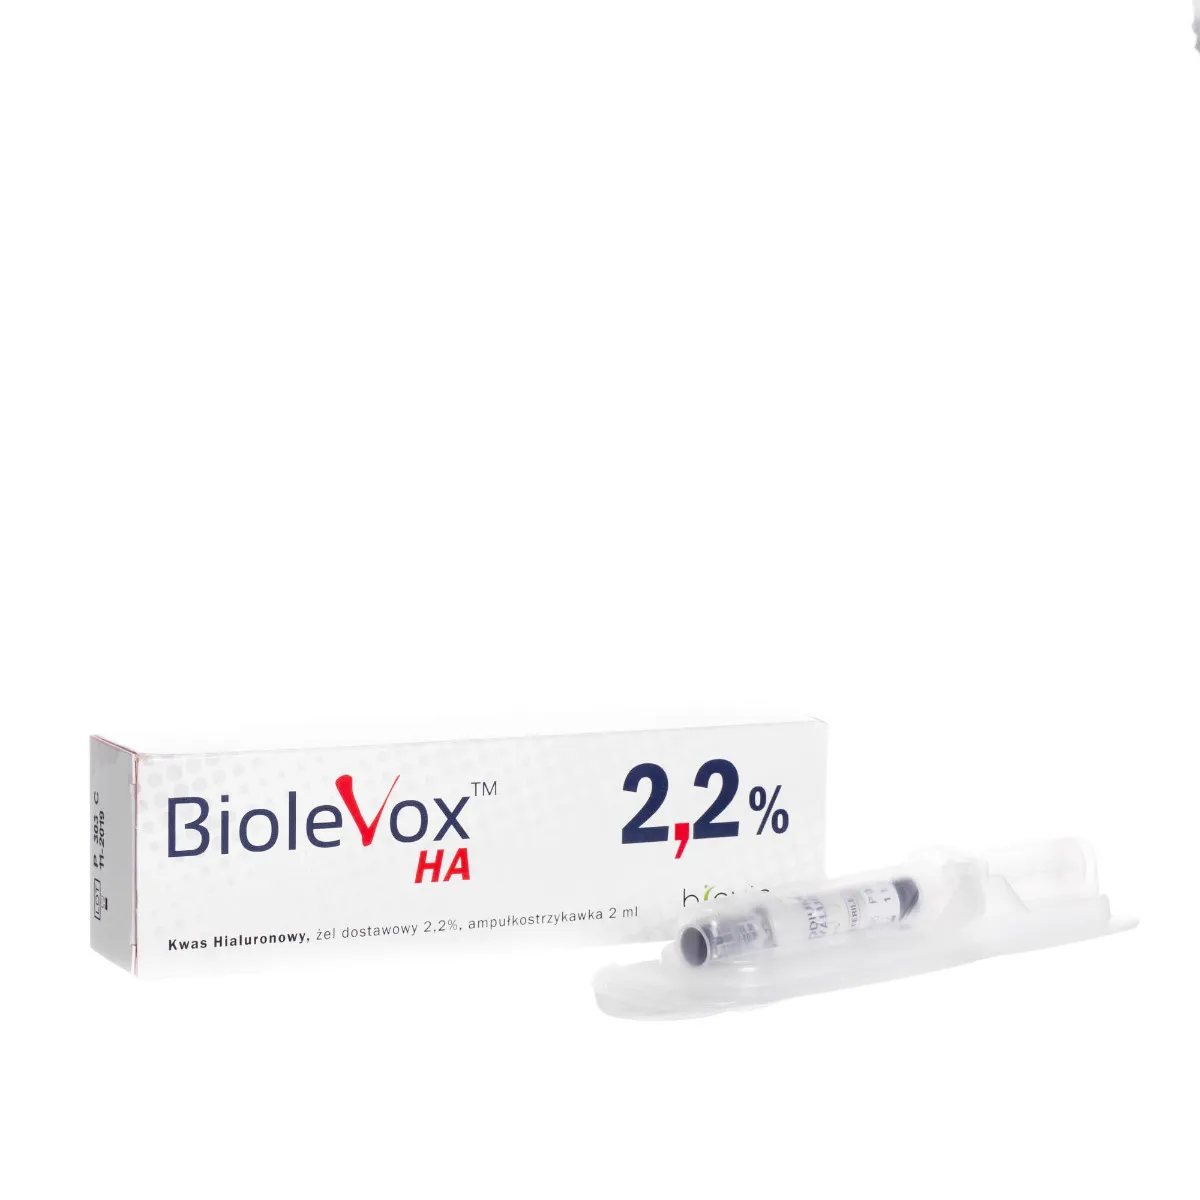 Biolevox HA, kwas hialuronowy, żel dostawowy 2,2%, ampułkostrzykawka 2ml